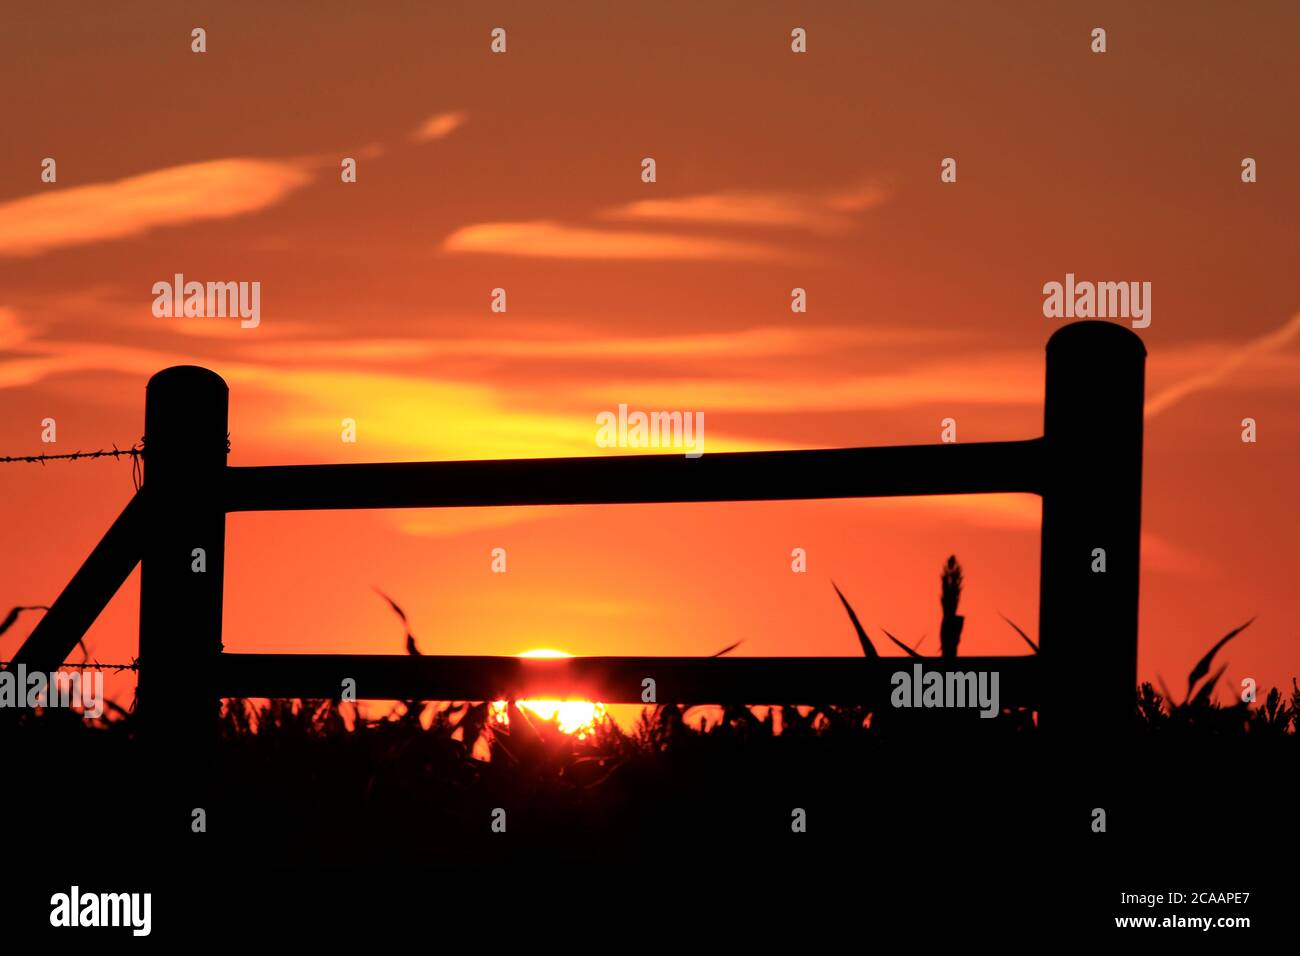 Kansas Bunte Sonnenuntergang mit einem bunten Himmel und einem Zaun Silhouette auf dem Land. Stockfoto